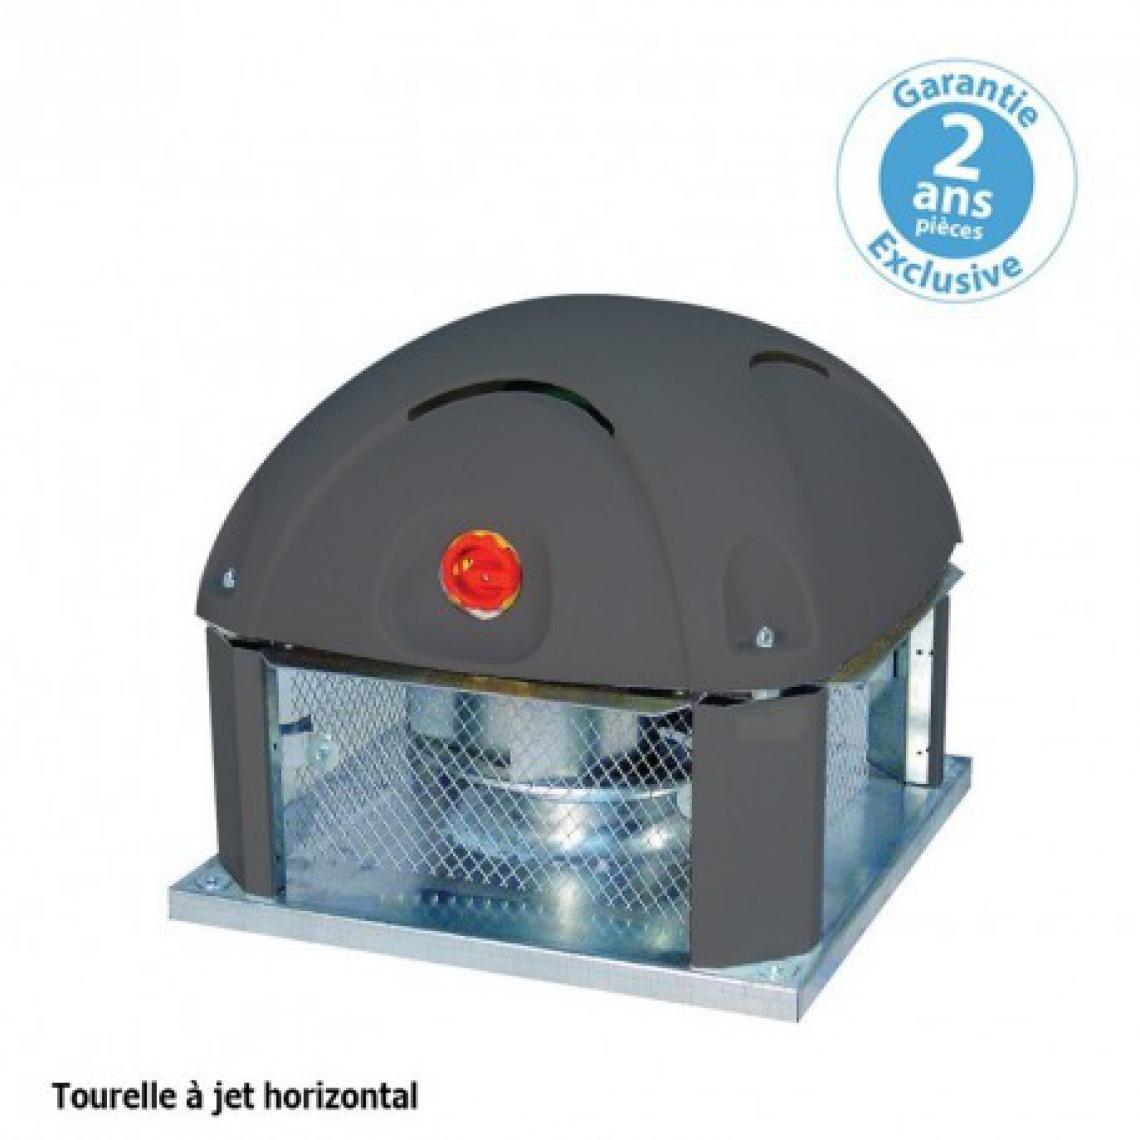 Furnotel - Tourelle 1 vitesse - triphasée - refoulement horizontal - 2900 m³ / h sous 180 Pa - - VMC, Ventilation